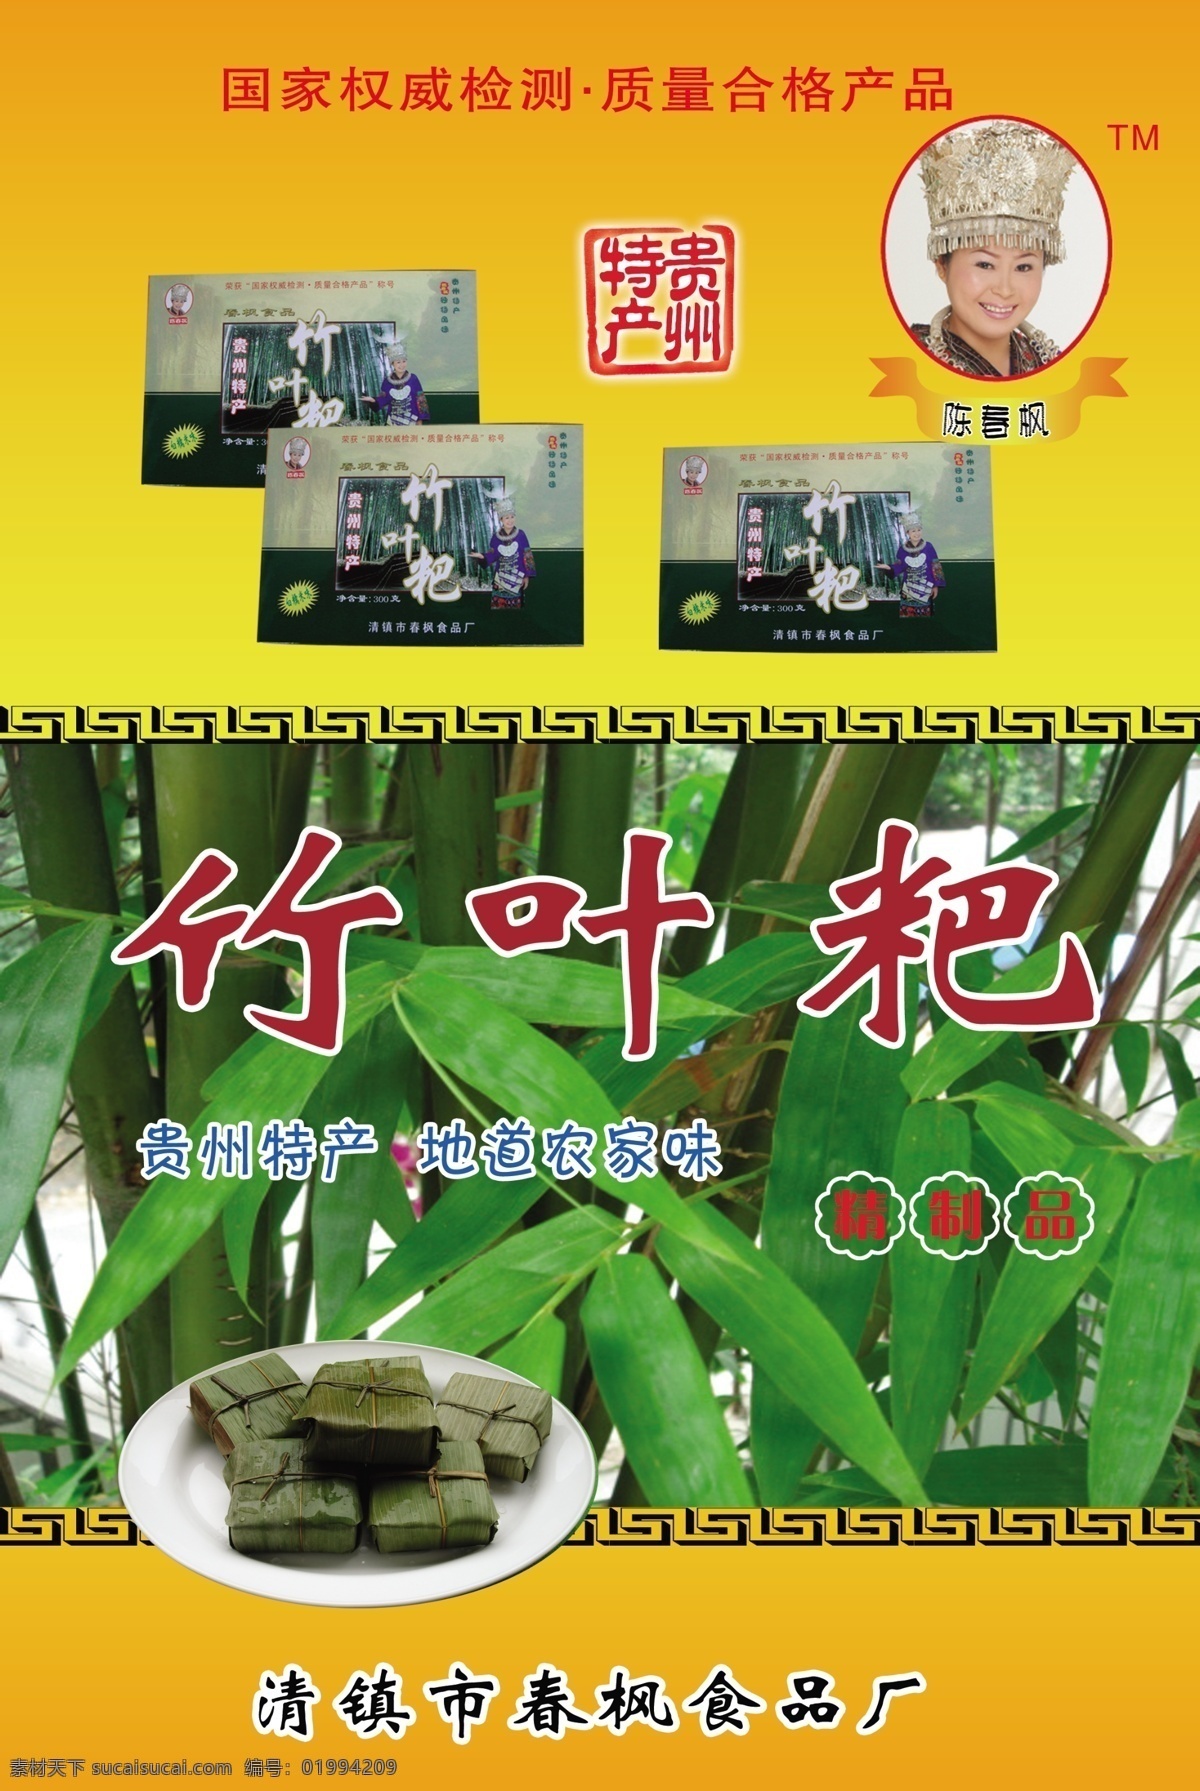 竹叶粑 春枫食品 贵州特产 广告设计模板 源文件